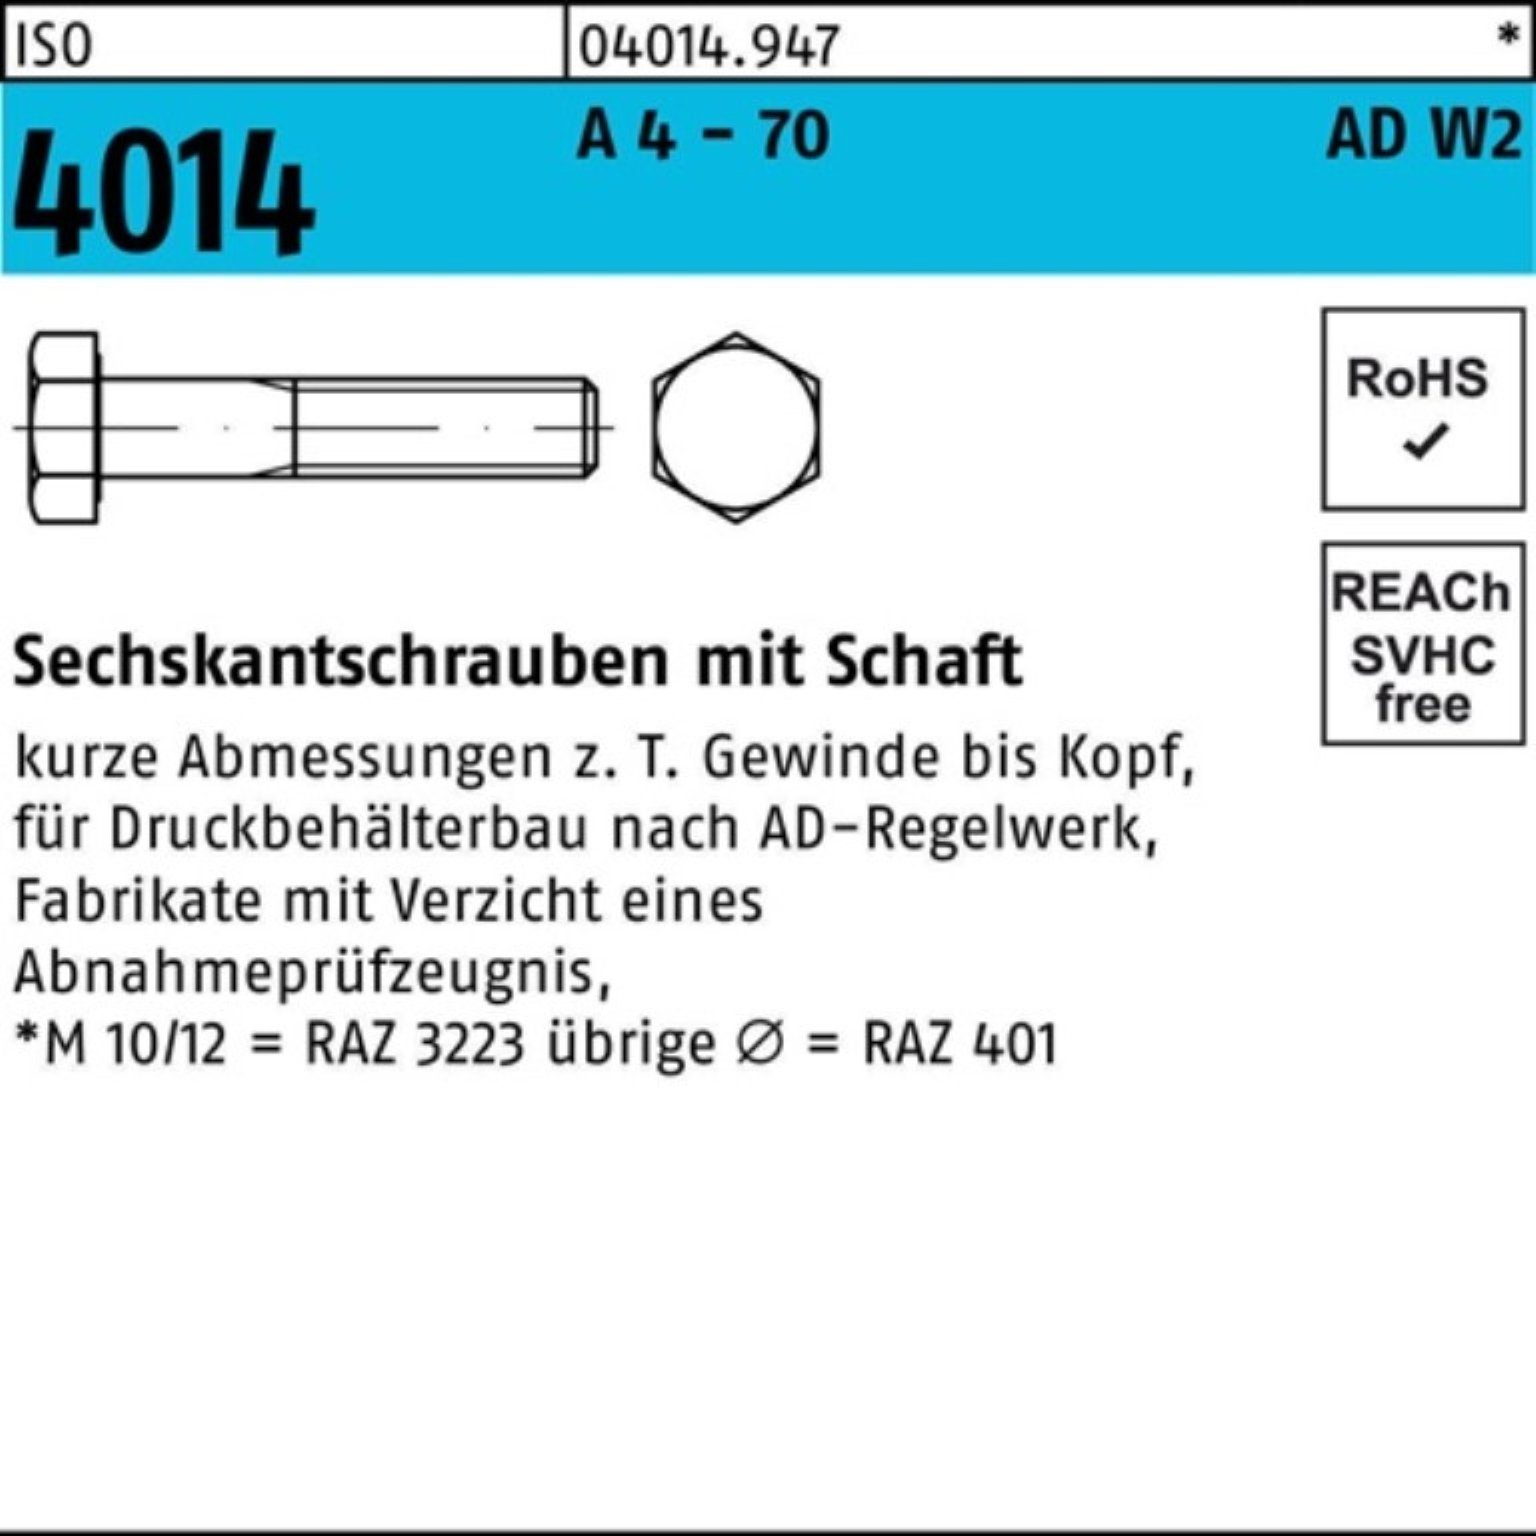 Bufab Sechskantschraube 100er Pack Sechskantschraube ISO 4014 Schaft M20x 80 A 4 - 70 AD-W2 25